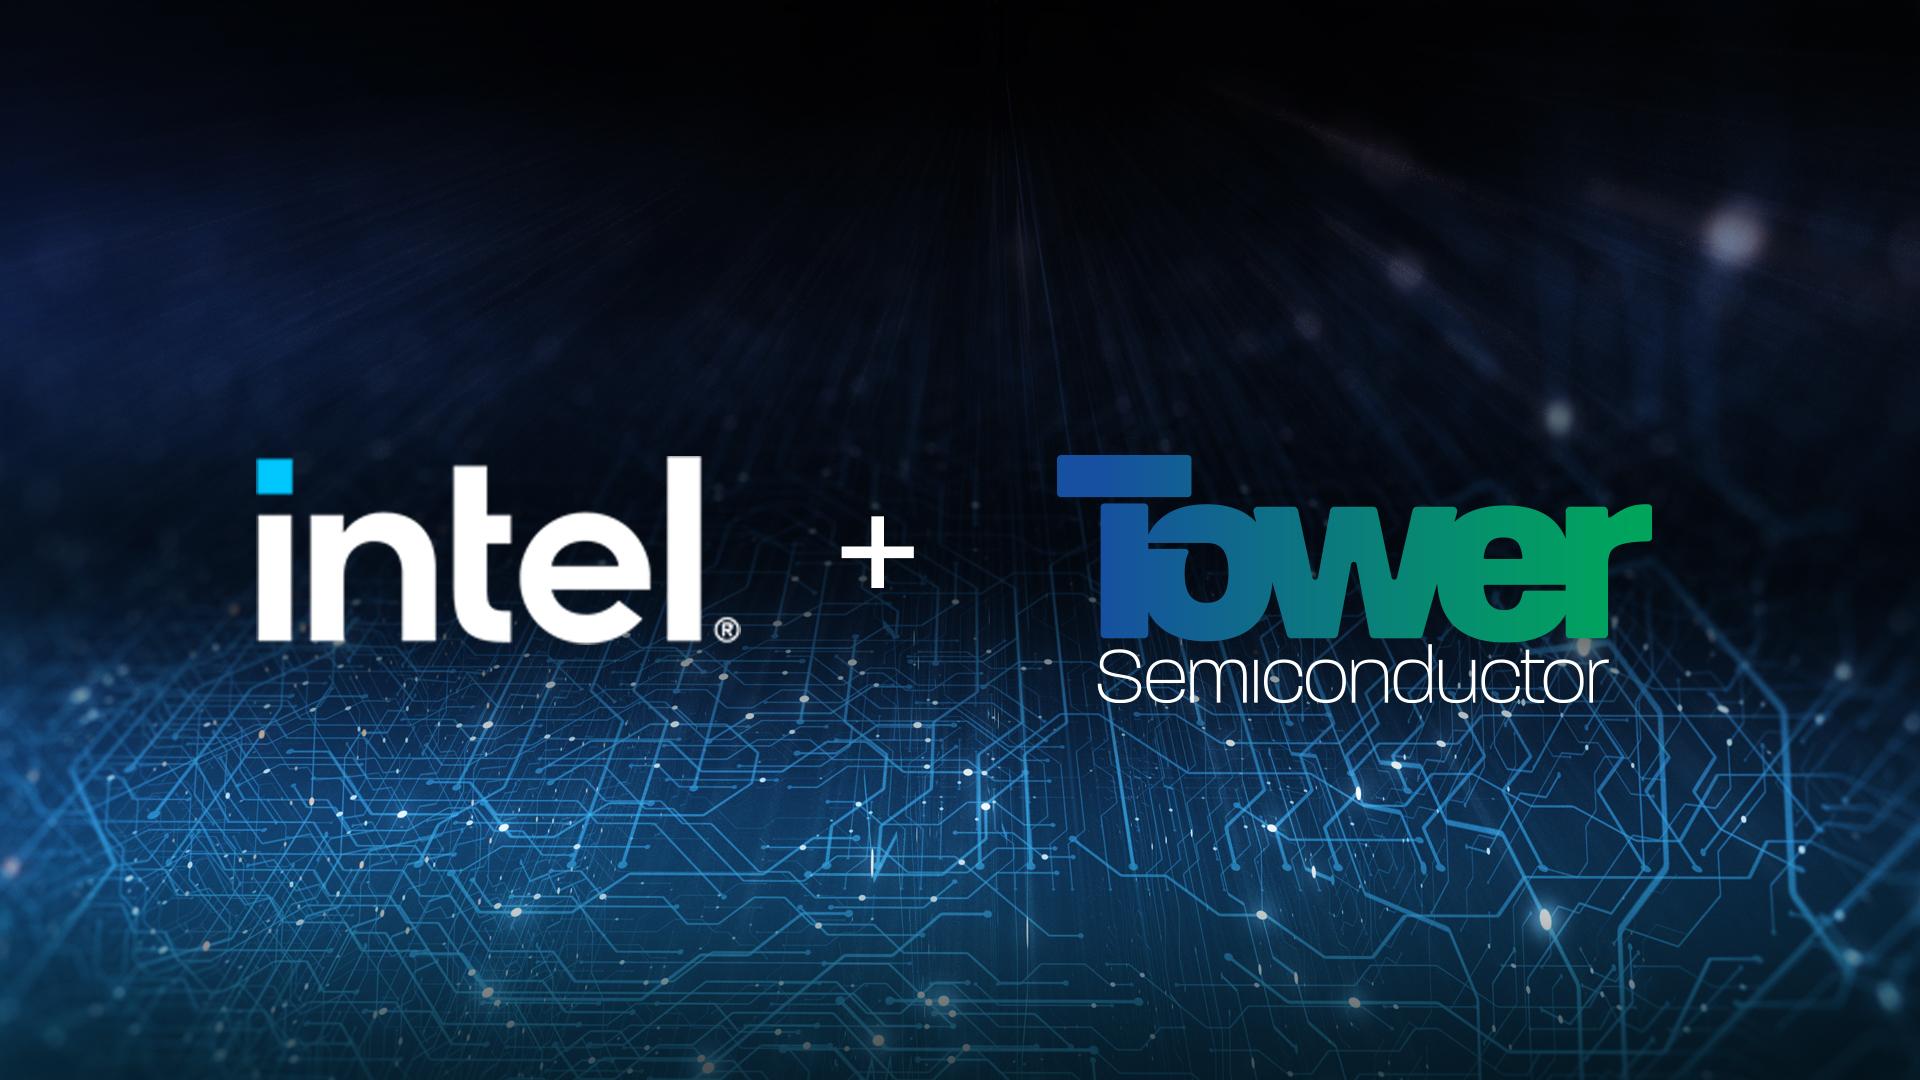 Rachat de Tower semiconductor par Intel